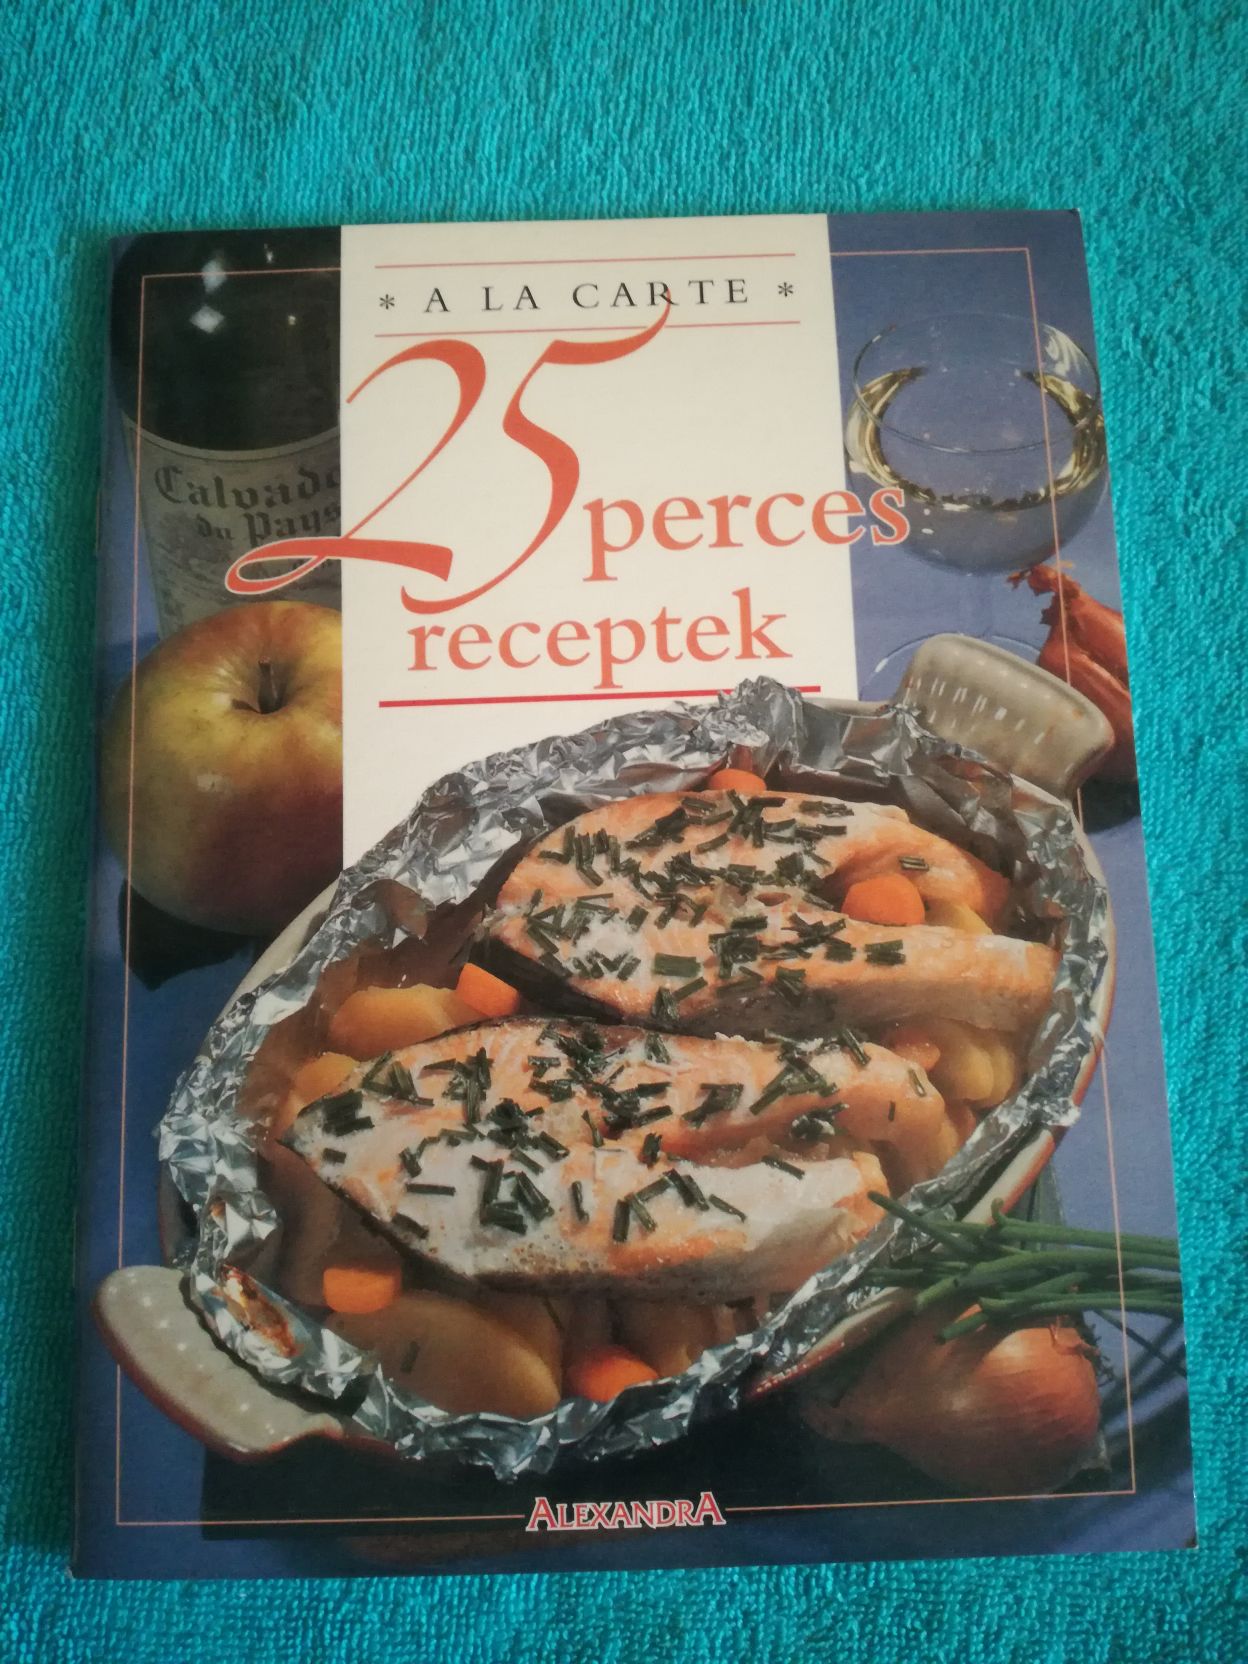 25 perces receptek (A la carte)